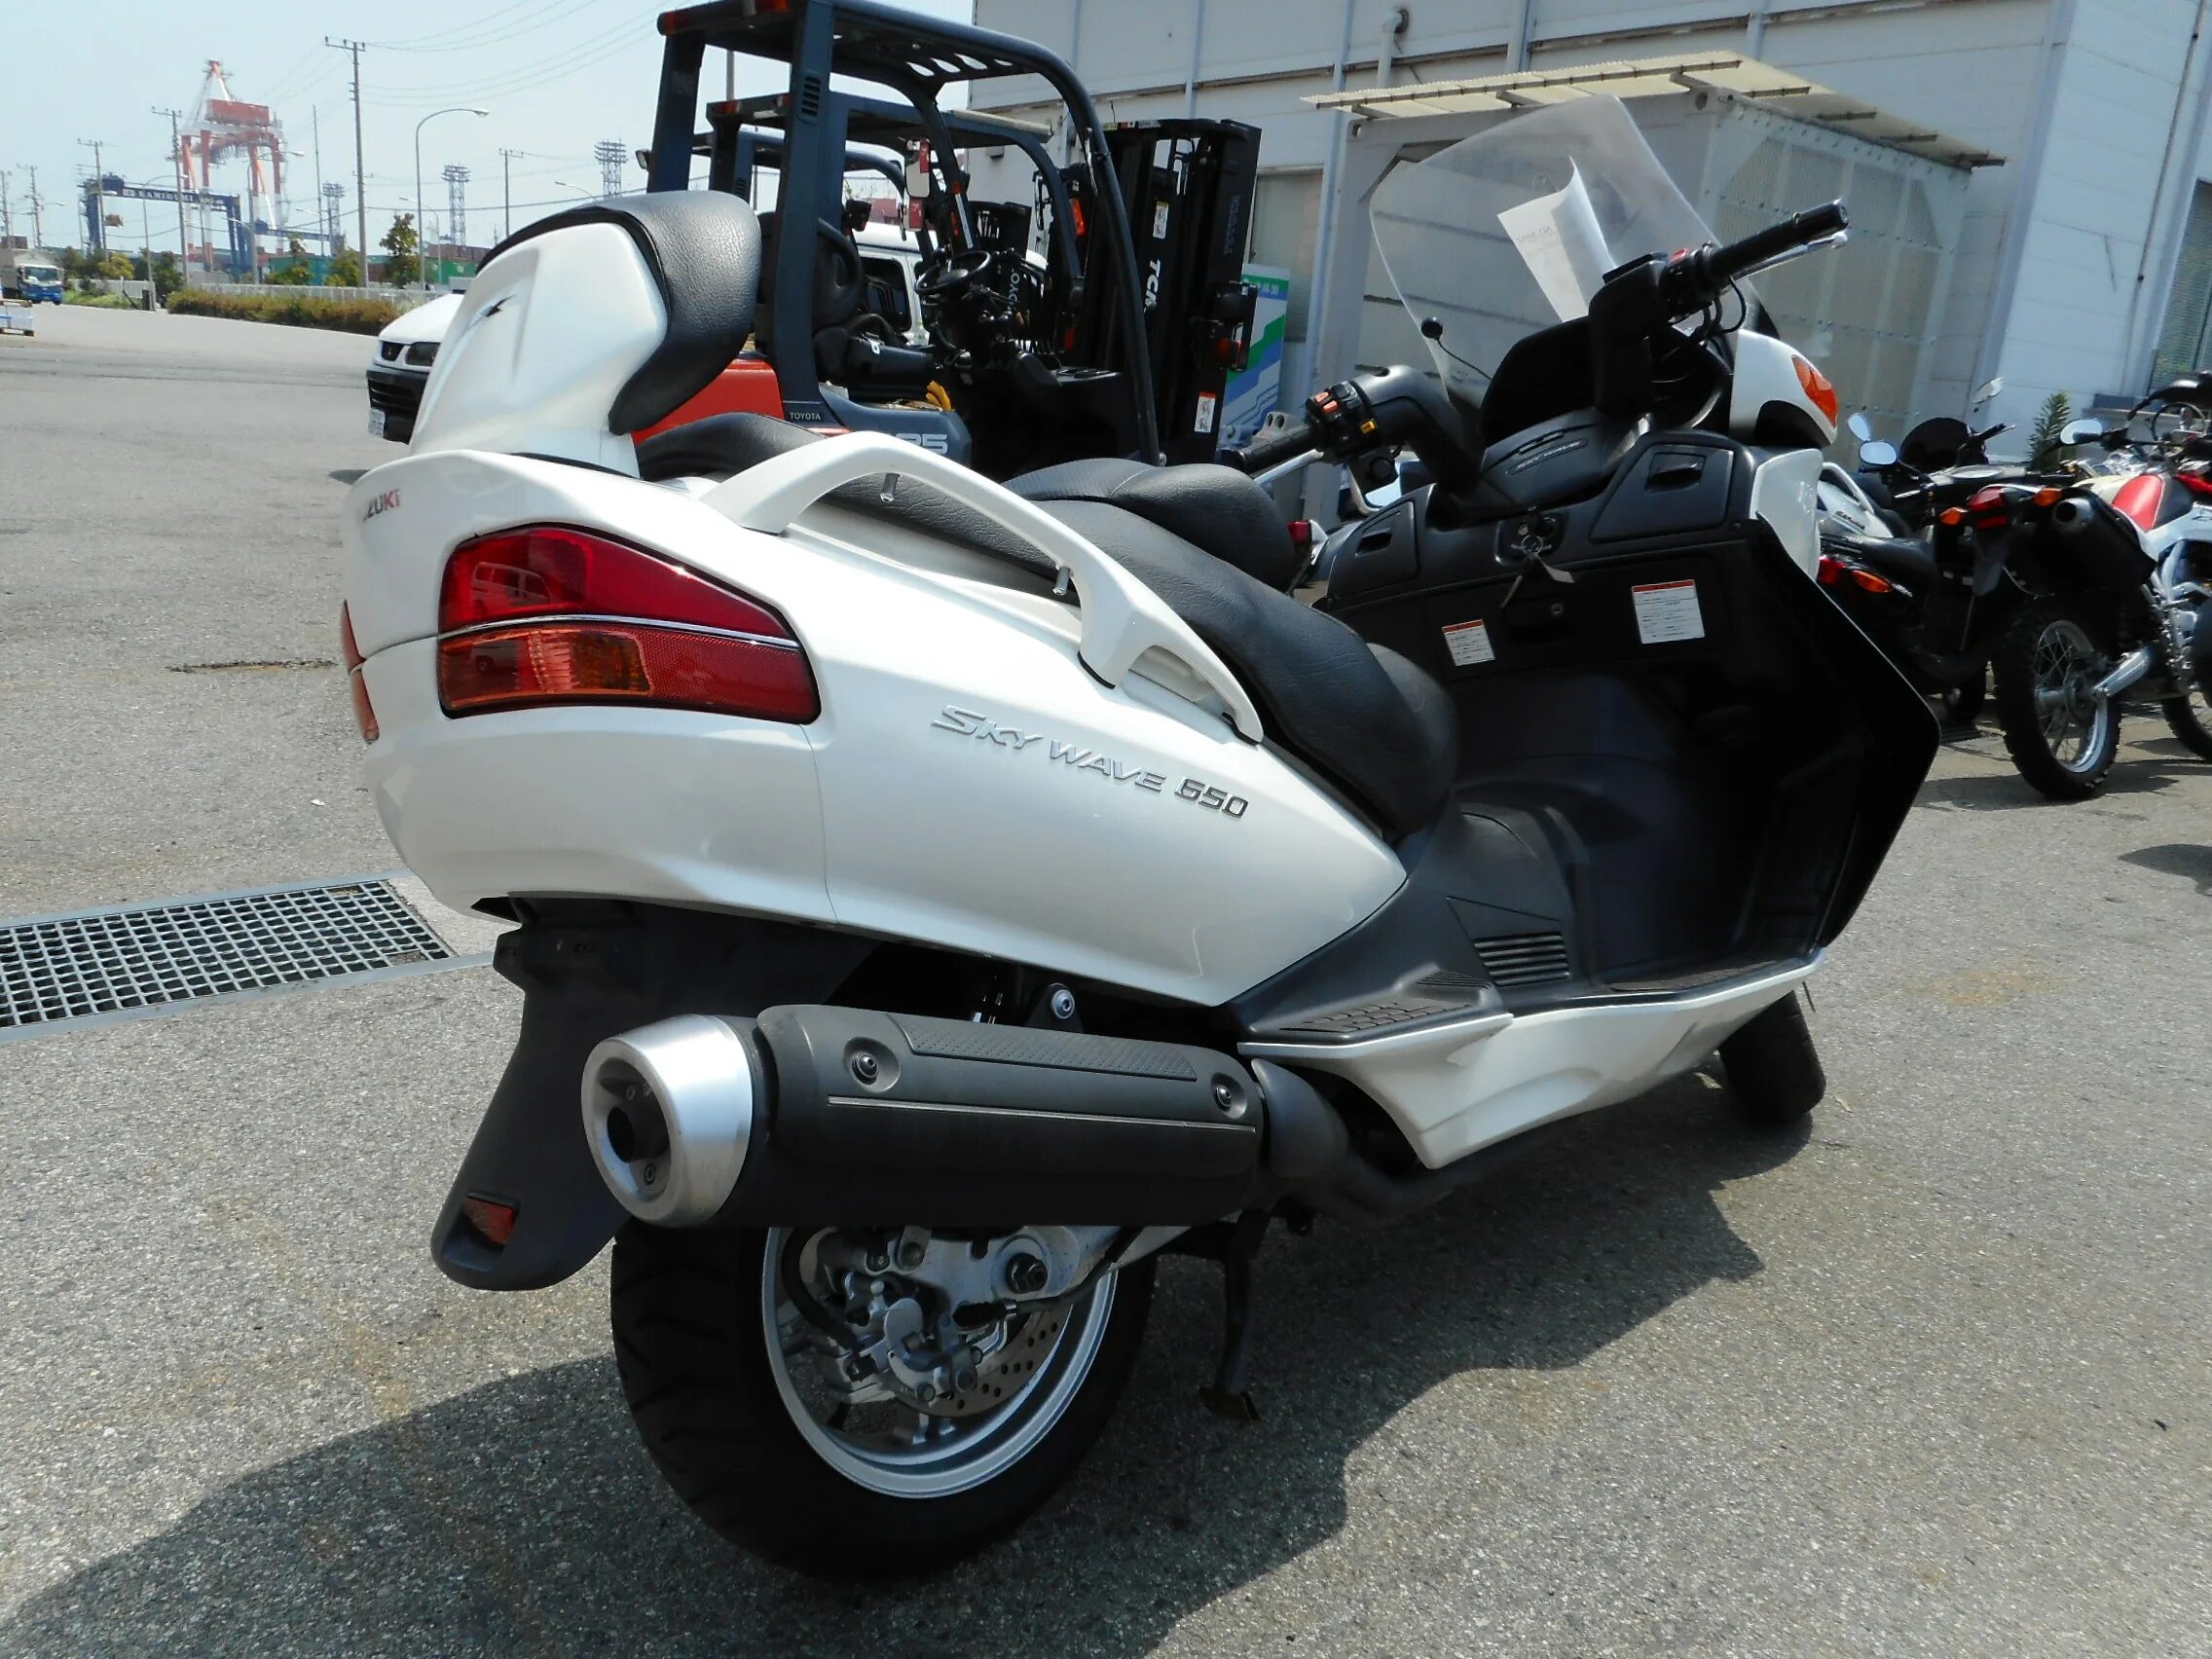 Skywave 650. Мотоцикл Suzuki Skywave 650. Burgman 650 белый. Suzuki skywave 650